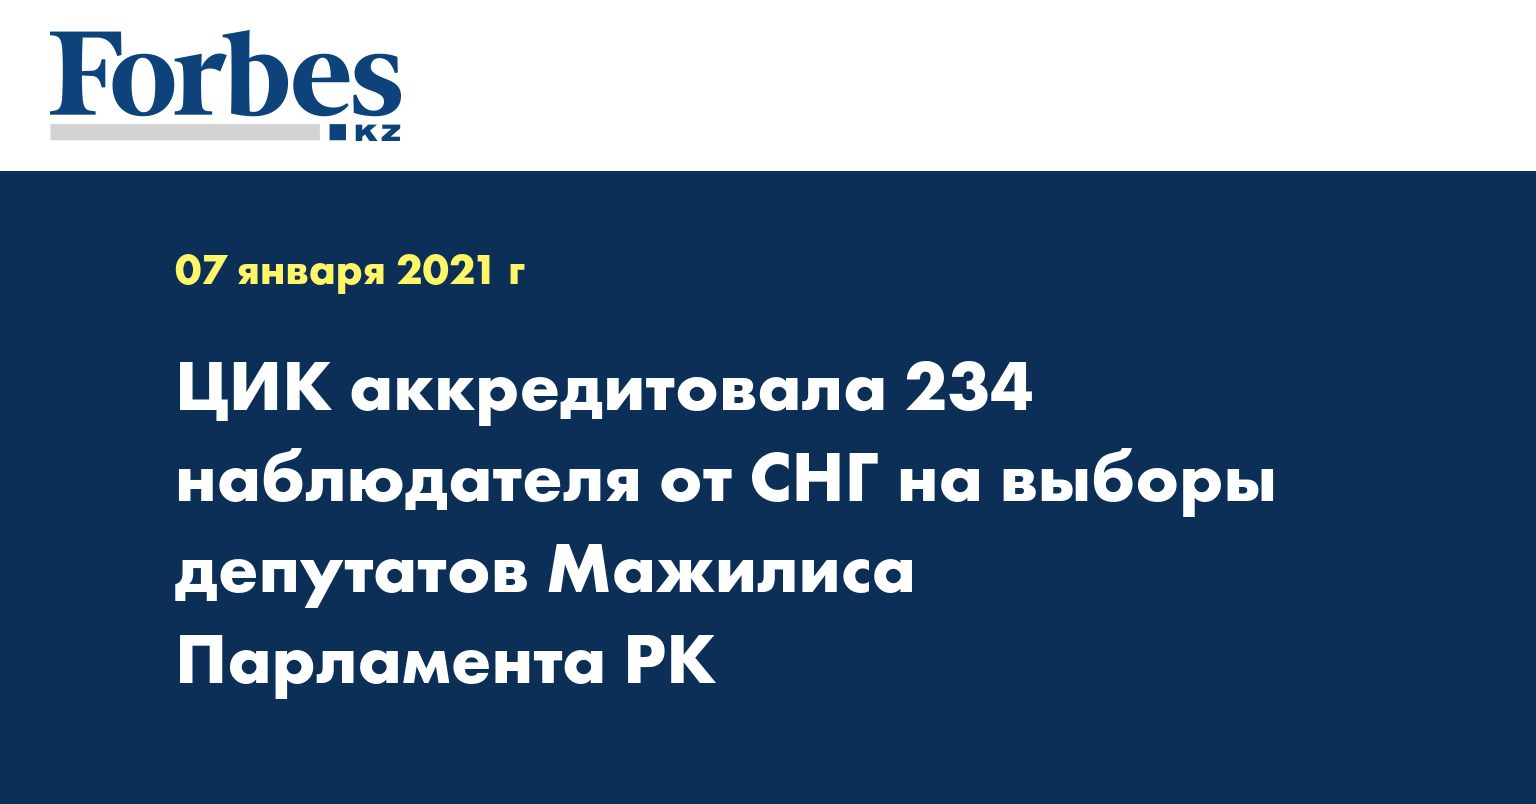 ЦИК аккредитовала 234 наблюдателя от СНГ на выборы депутатов Мажилиса Парламента РК